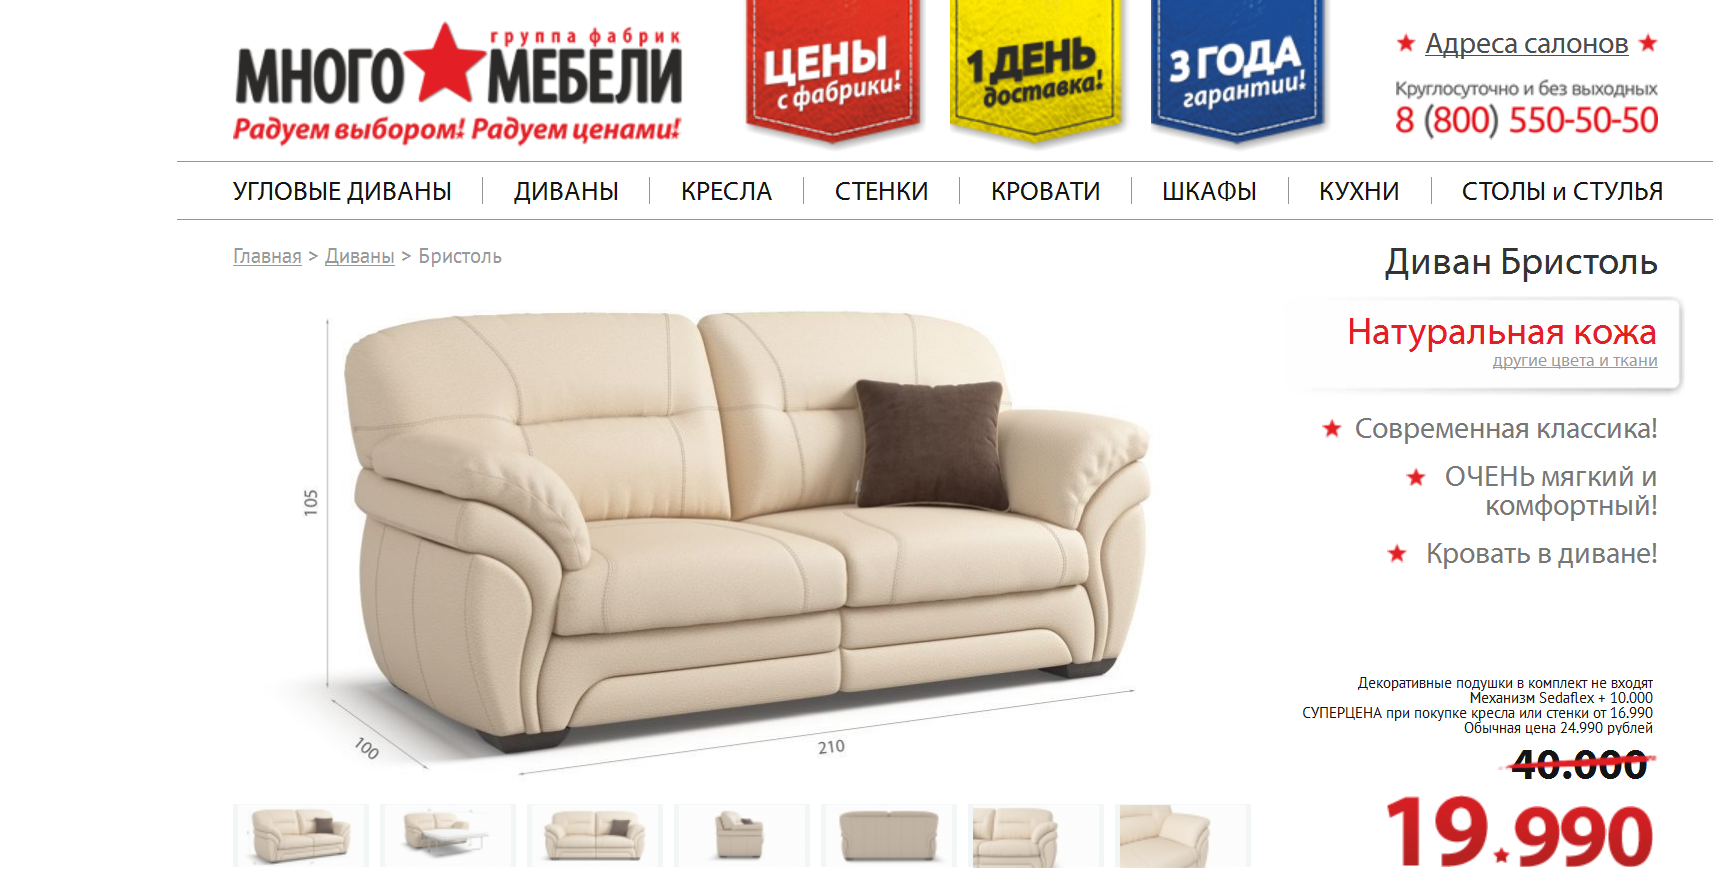 Диван ru москва официальный сайт каталог цены